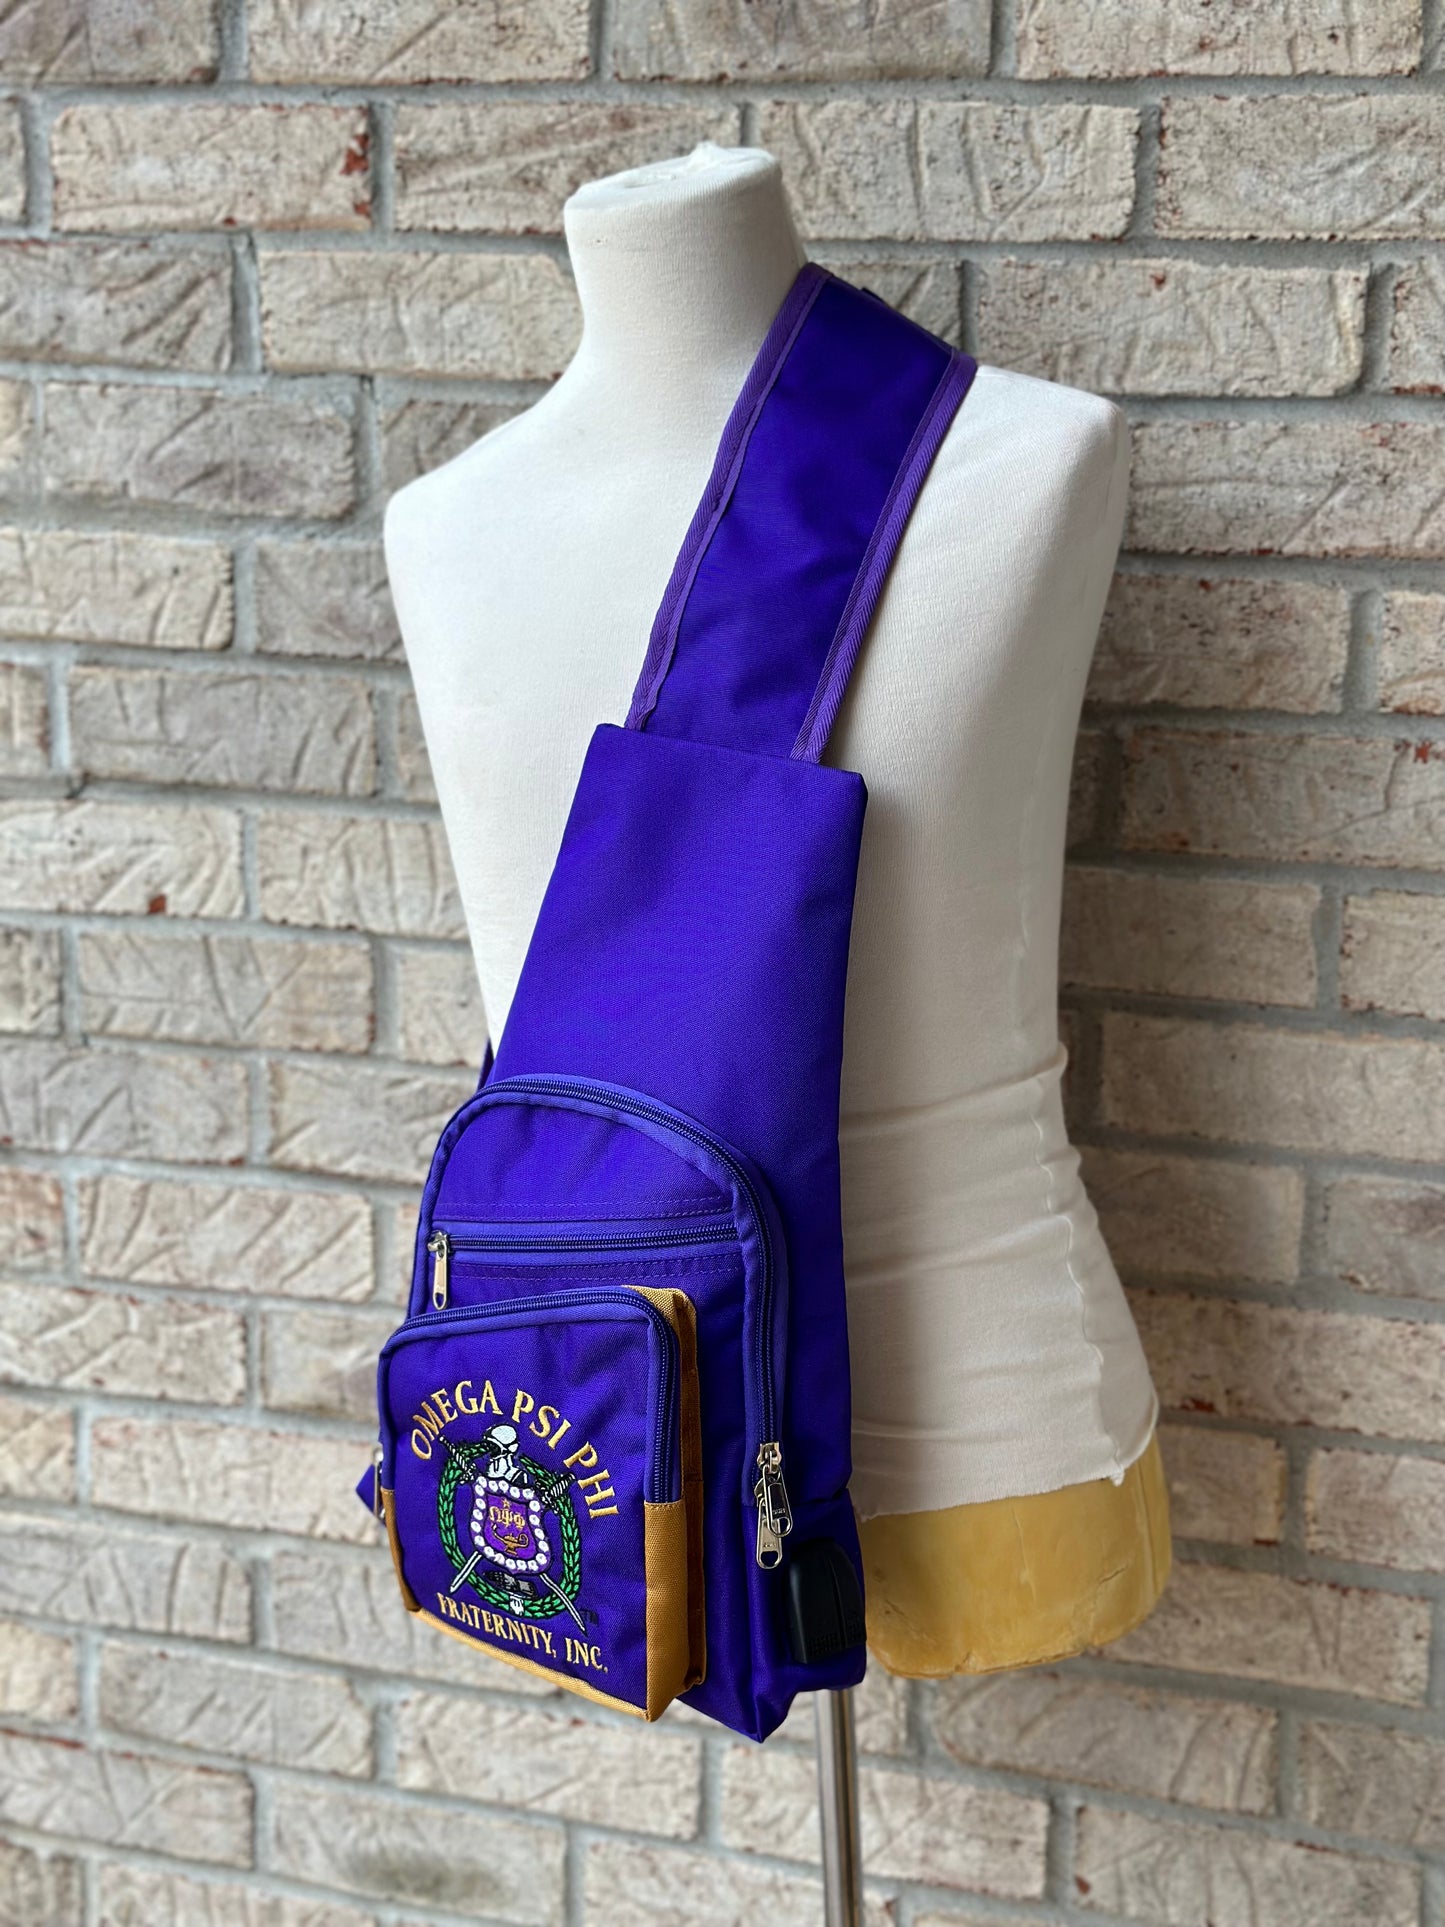 Omega Psi Phi (ΩΨΦ) Fraternity, single Shoulder Crossbody Sling/Shoulder bag with USB Port, Embroidered Organizational Shield in Front